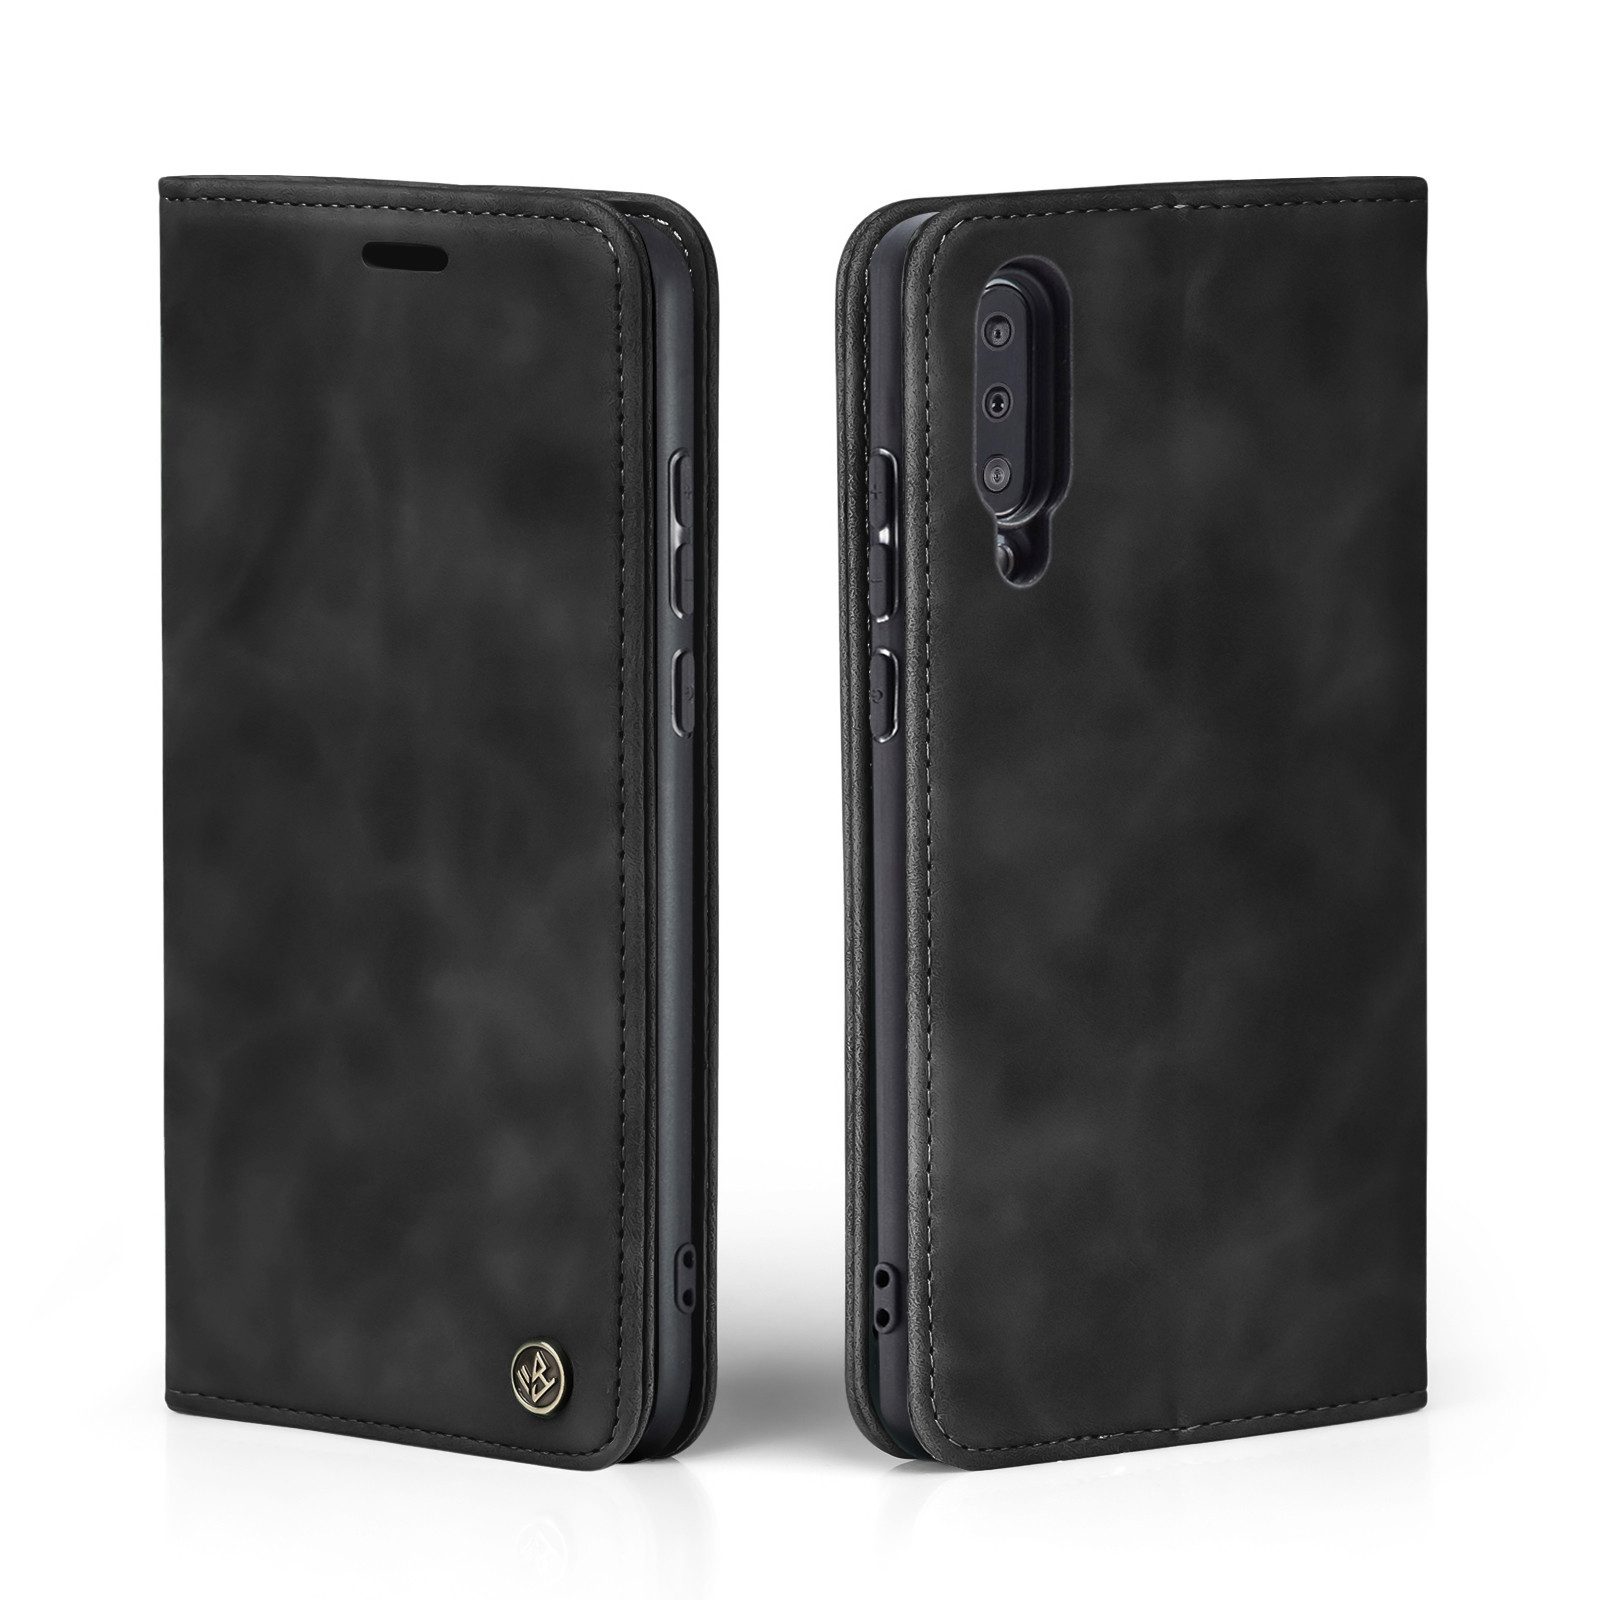 Tec-Expert Handyhülle Tasche Hülle für Samsung Galaxy A50, Cover Klapphülle Case mit Kartenfach Fliphülle aufstellbar